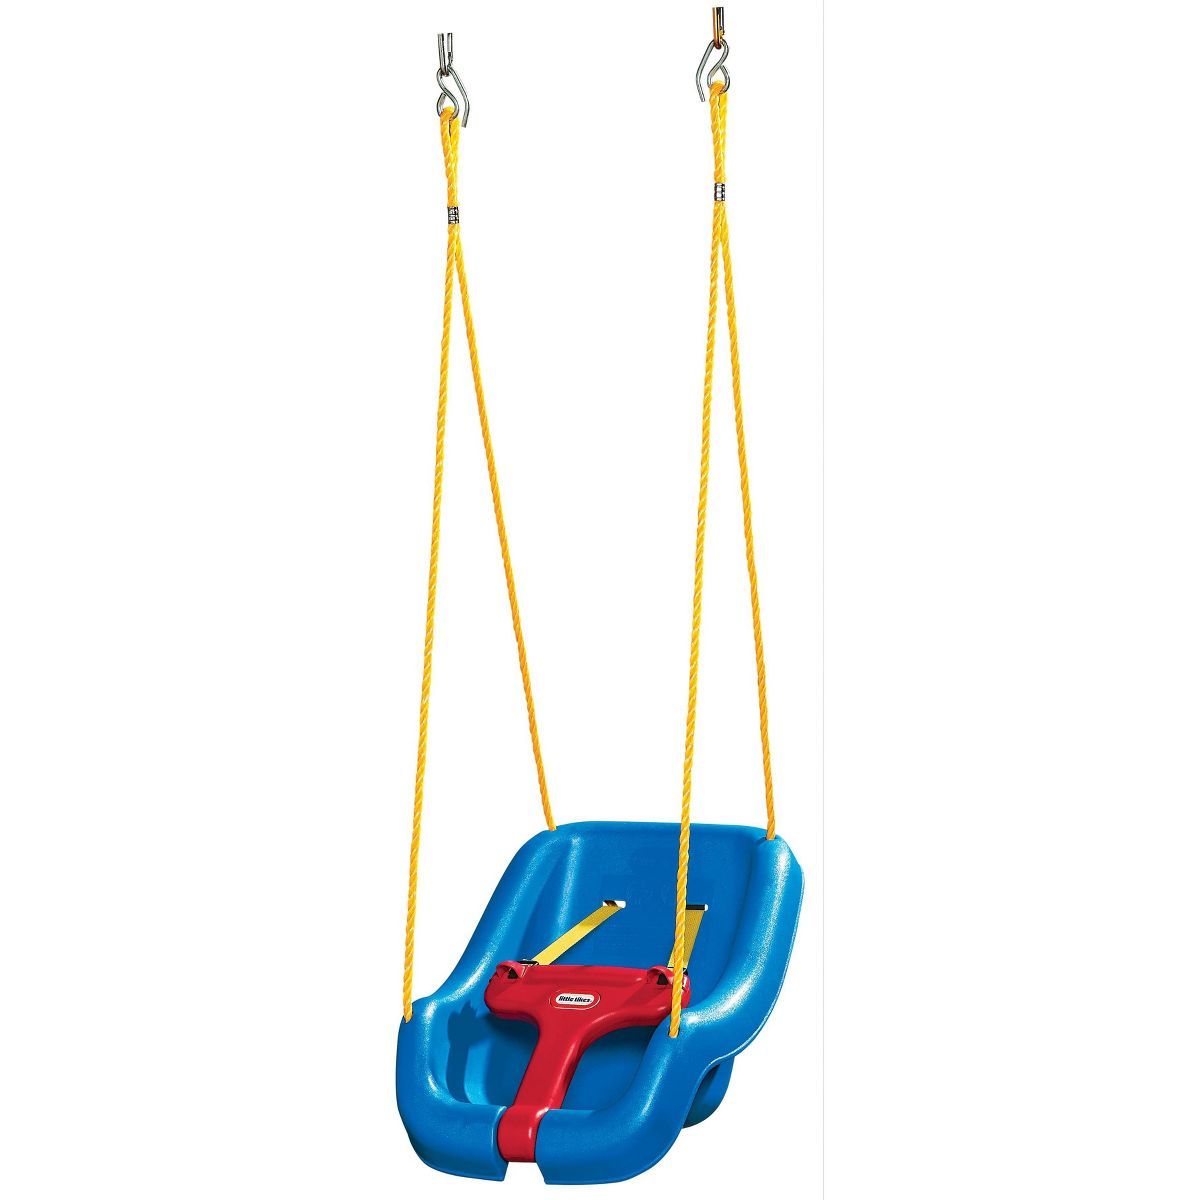 Little Tikes 2-in-1 Snug 'n Secure Swing - Blue | Target